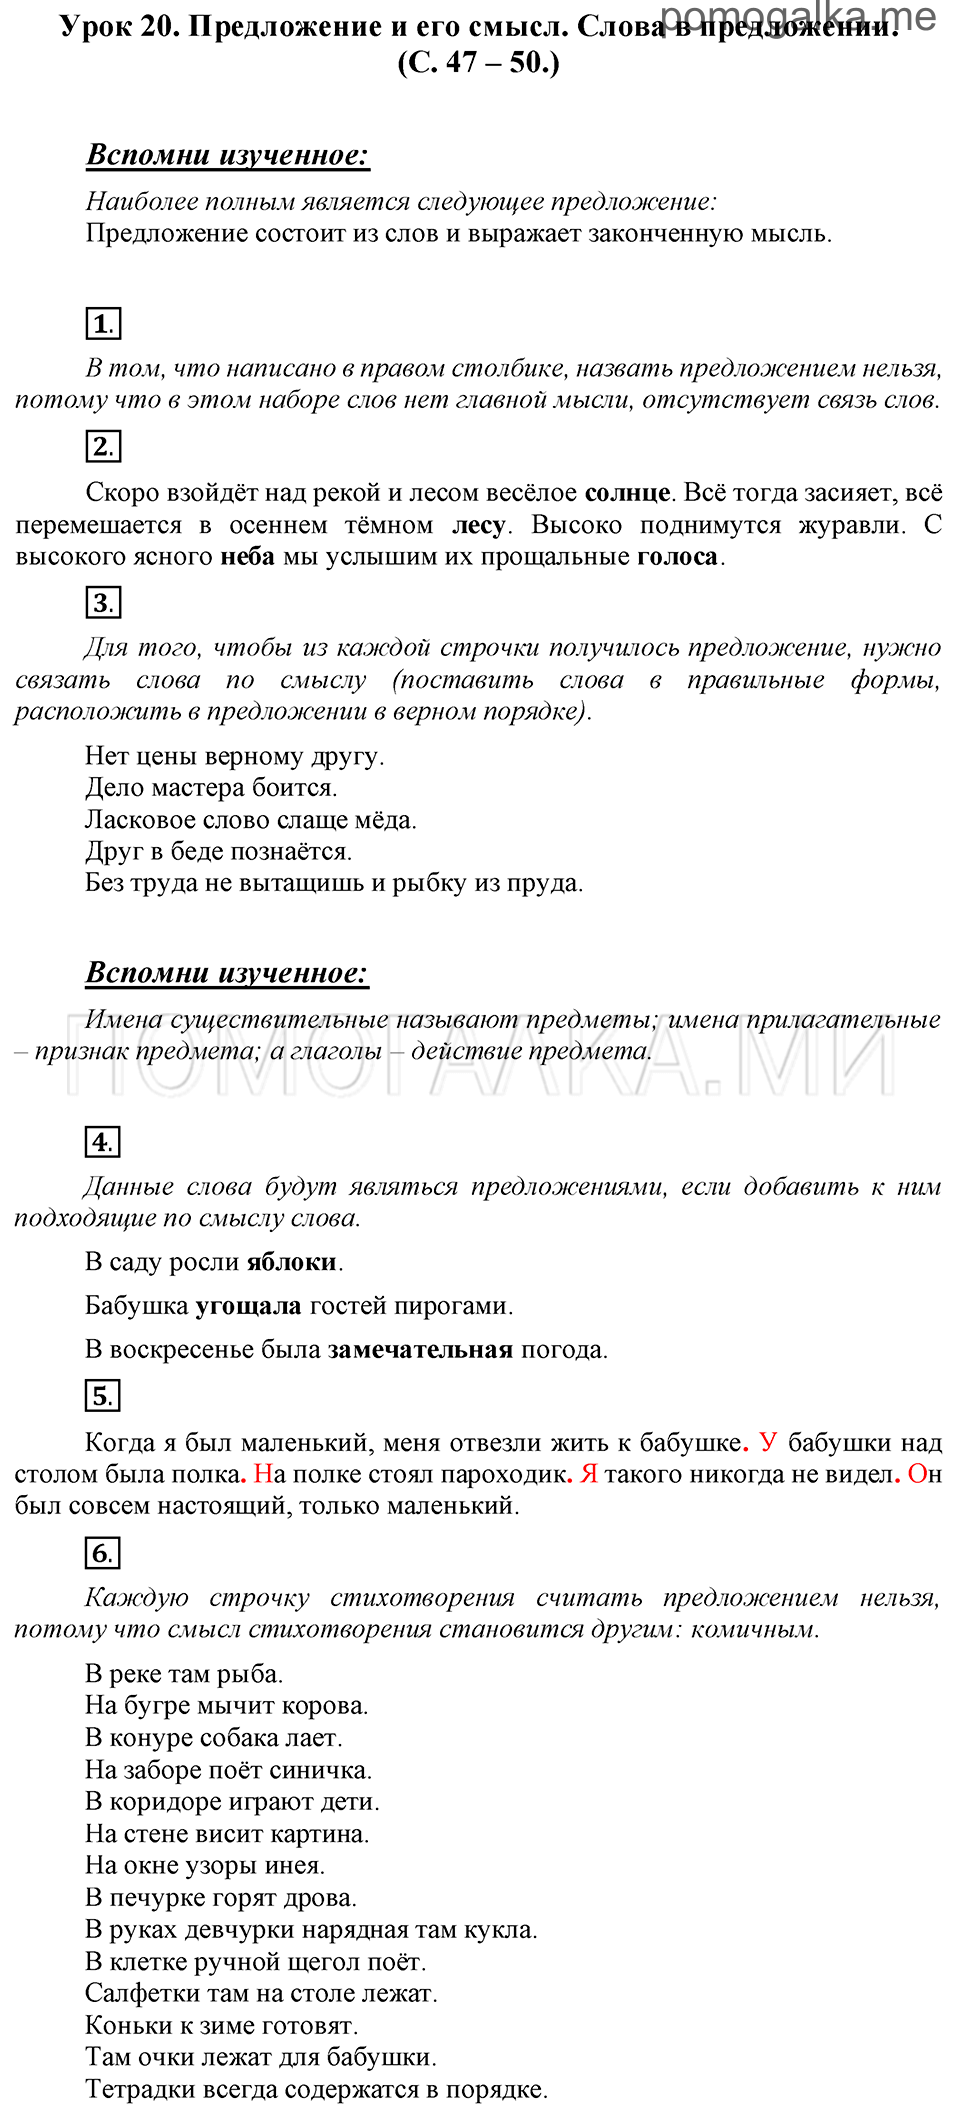 часть 1 страницы 47-50 урок 20 русский язык 3 класс Иванов, Евдокимова, Кузнецова